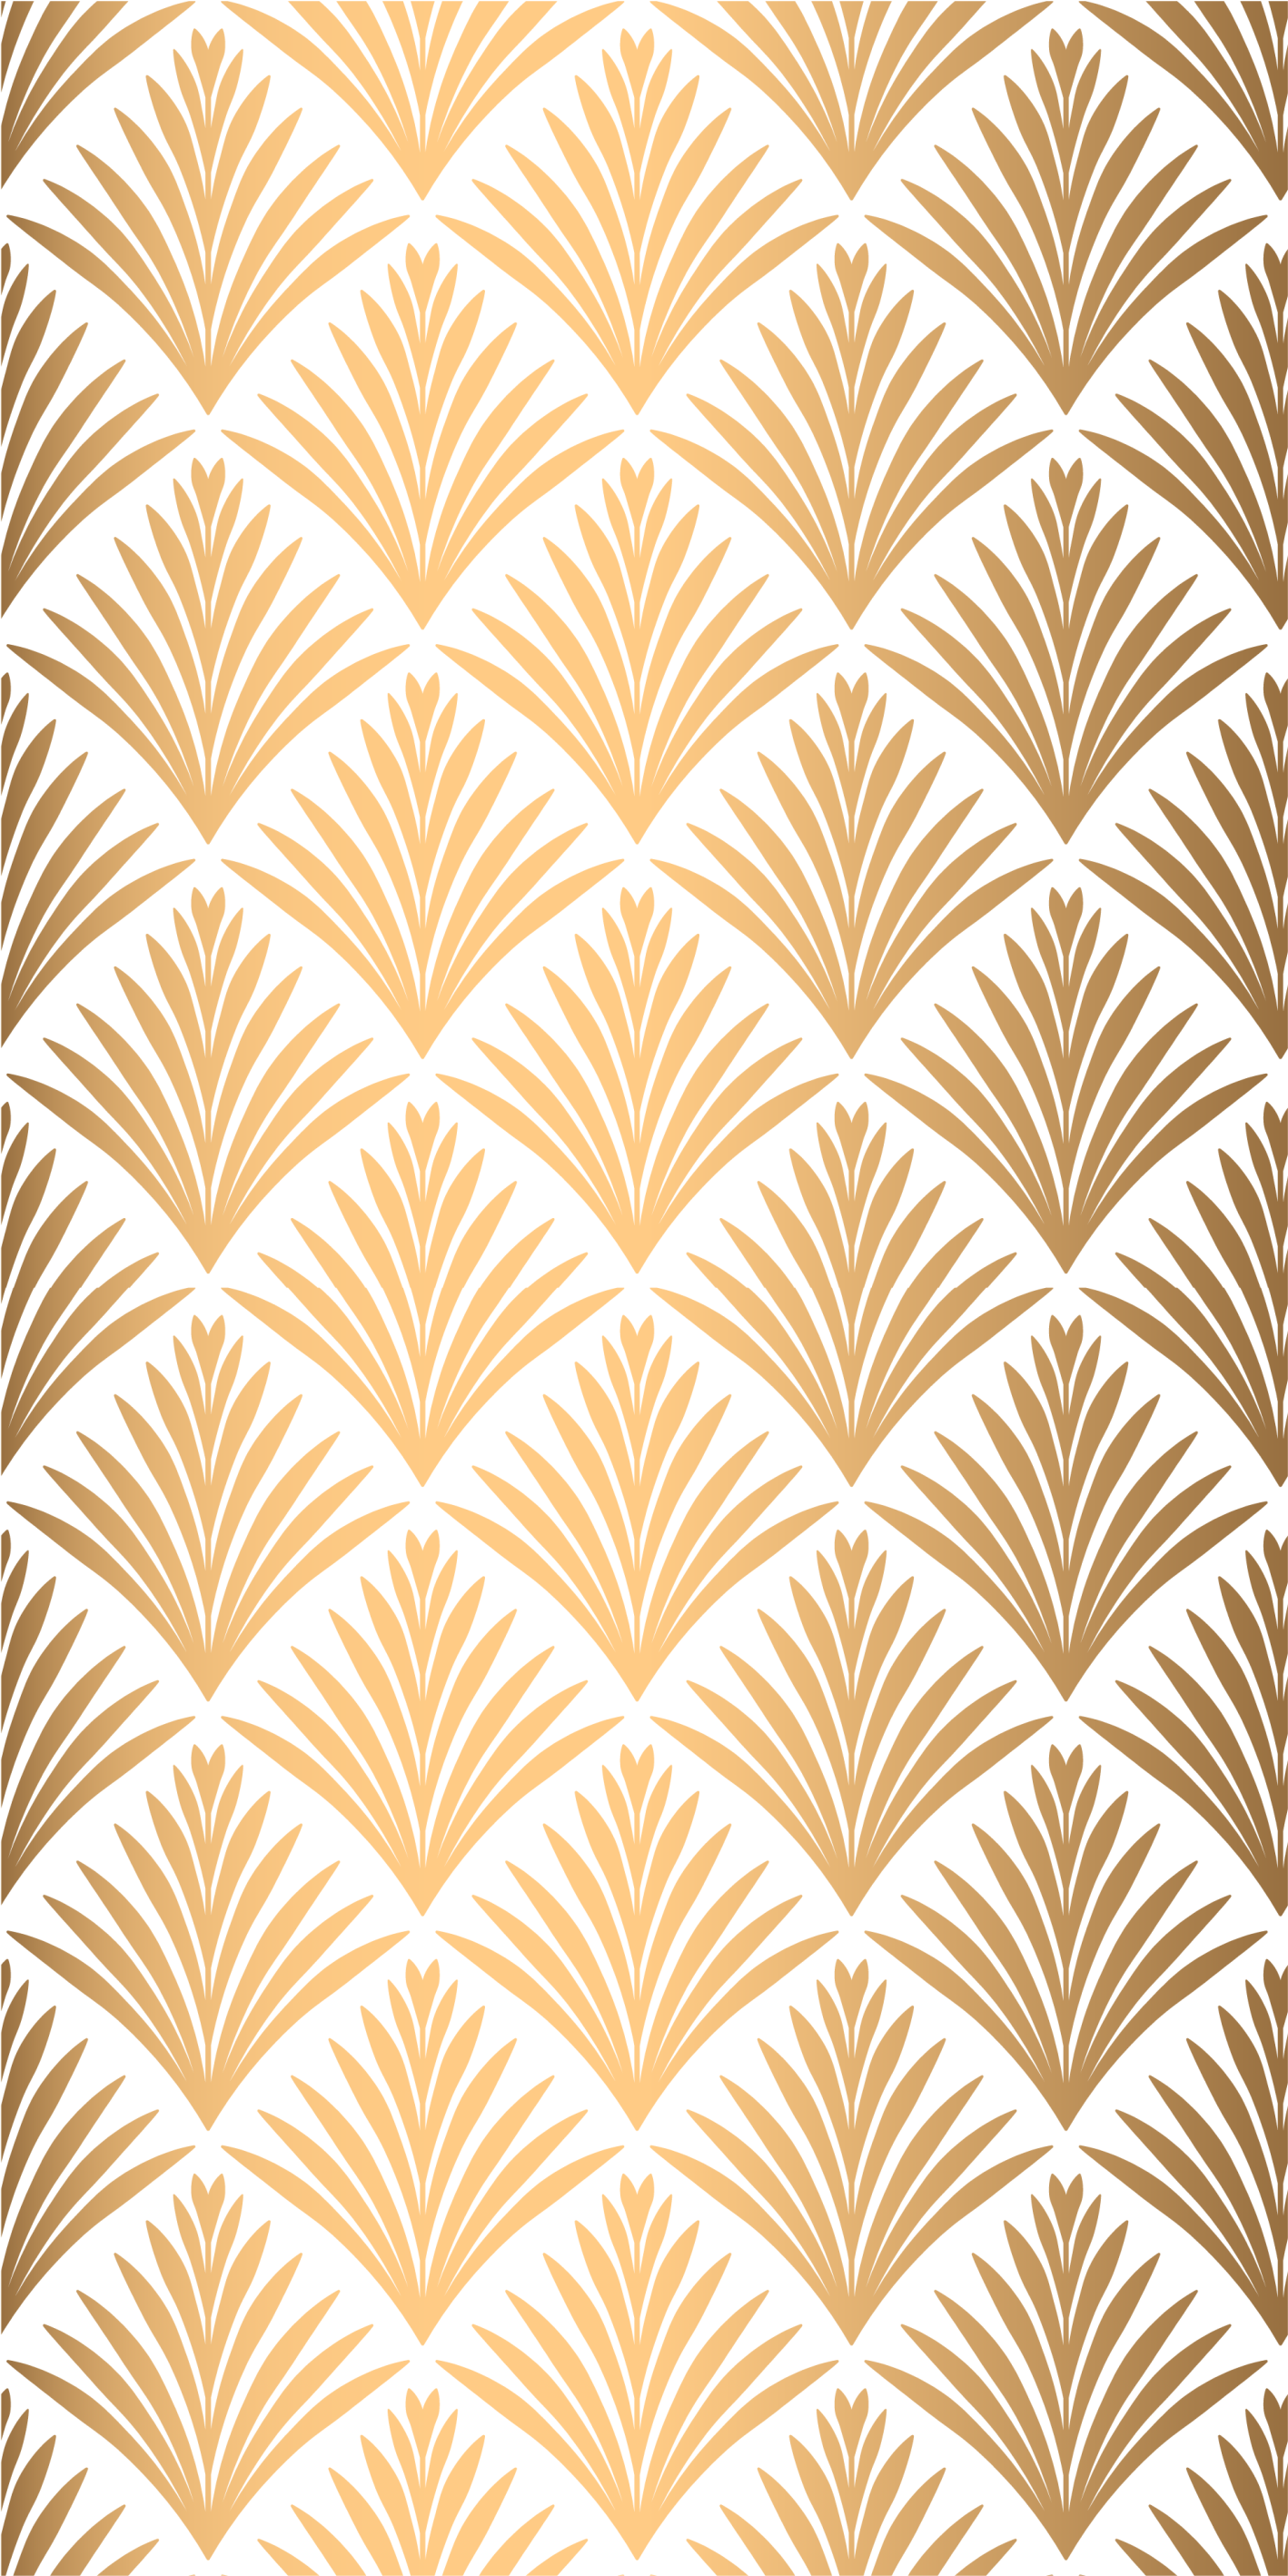 Golden leaves leaves wallpaper - TenStickers